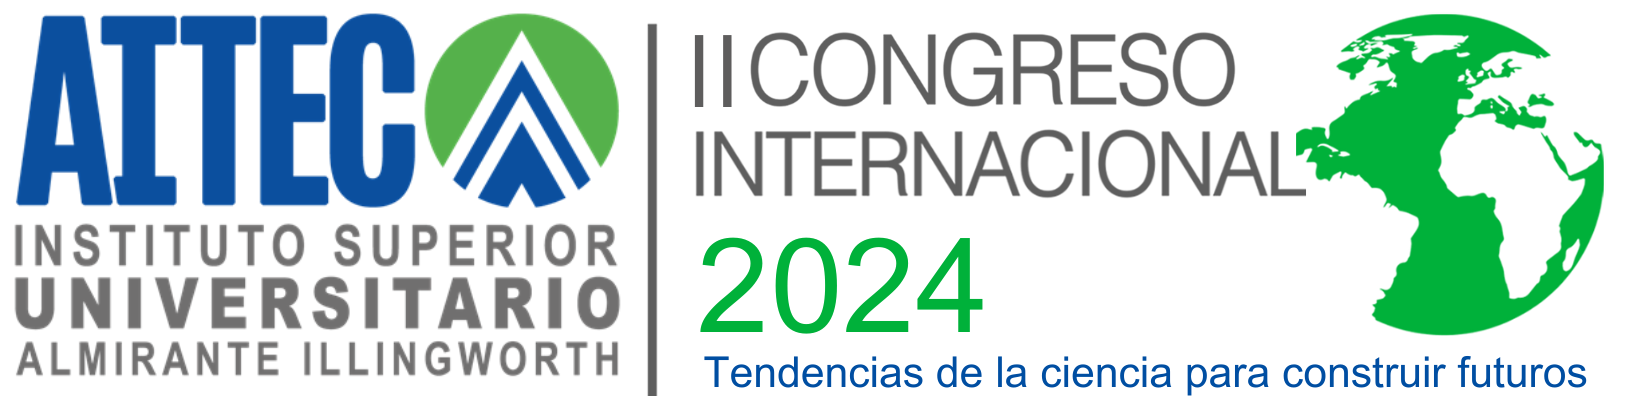 cropped-Logo-II-Congreso-AITEC.png